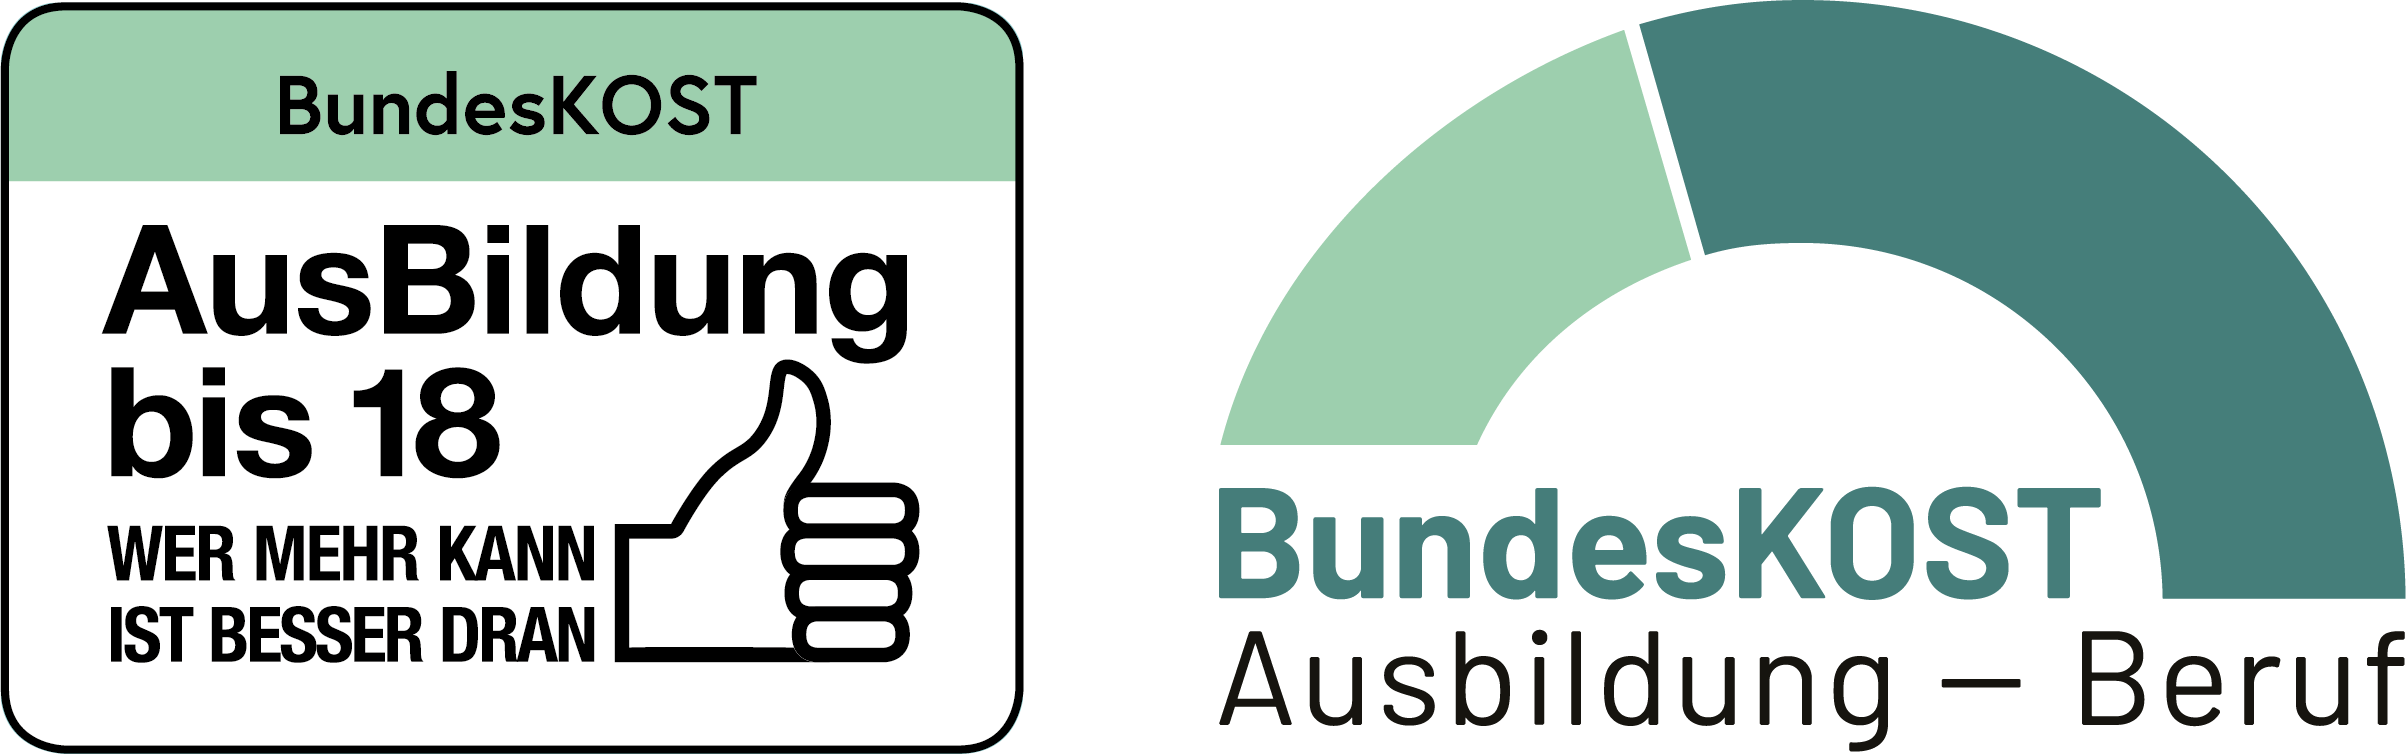 Logos BundesKOST AusBildung bis 18 und Ausbildung - Beruf